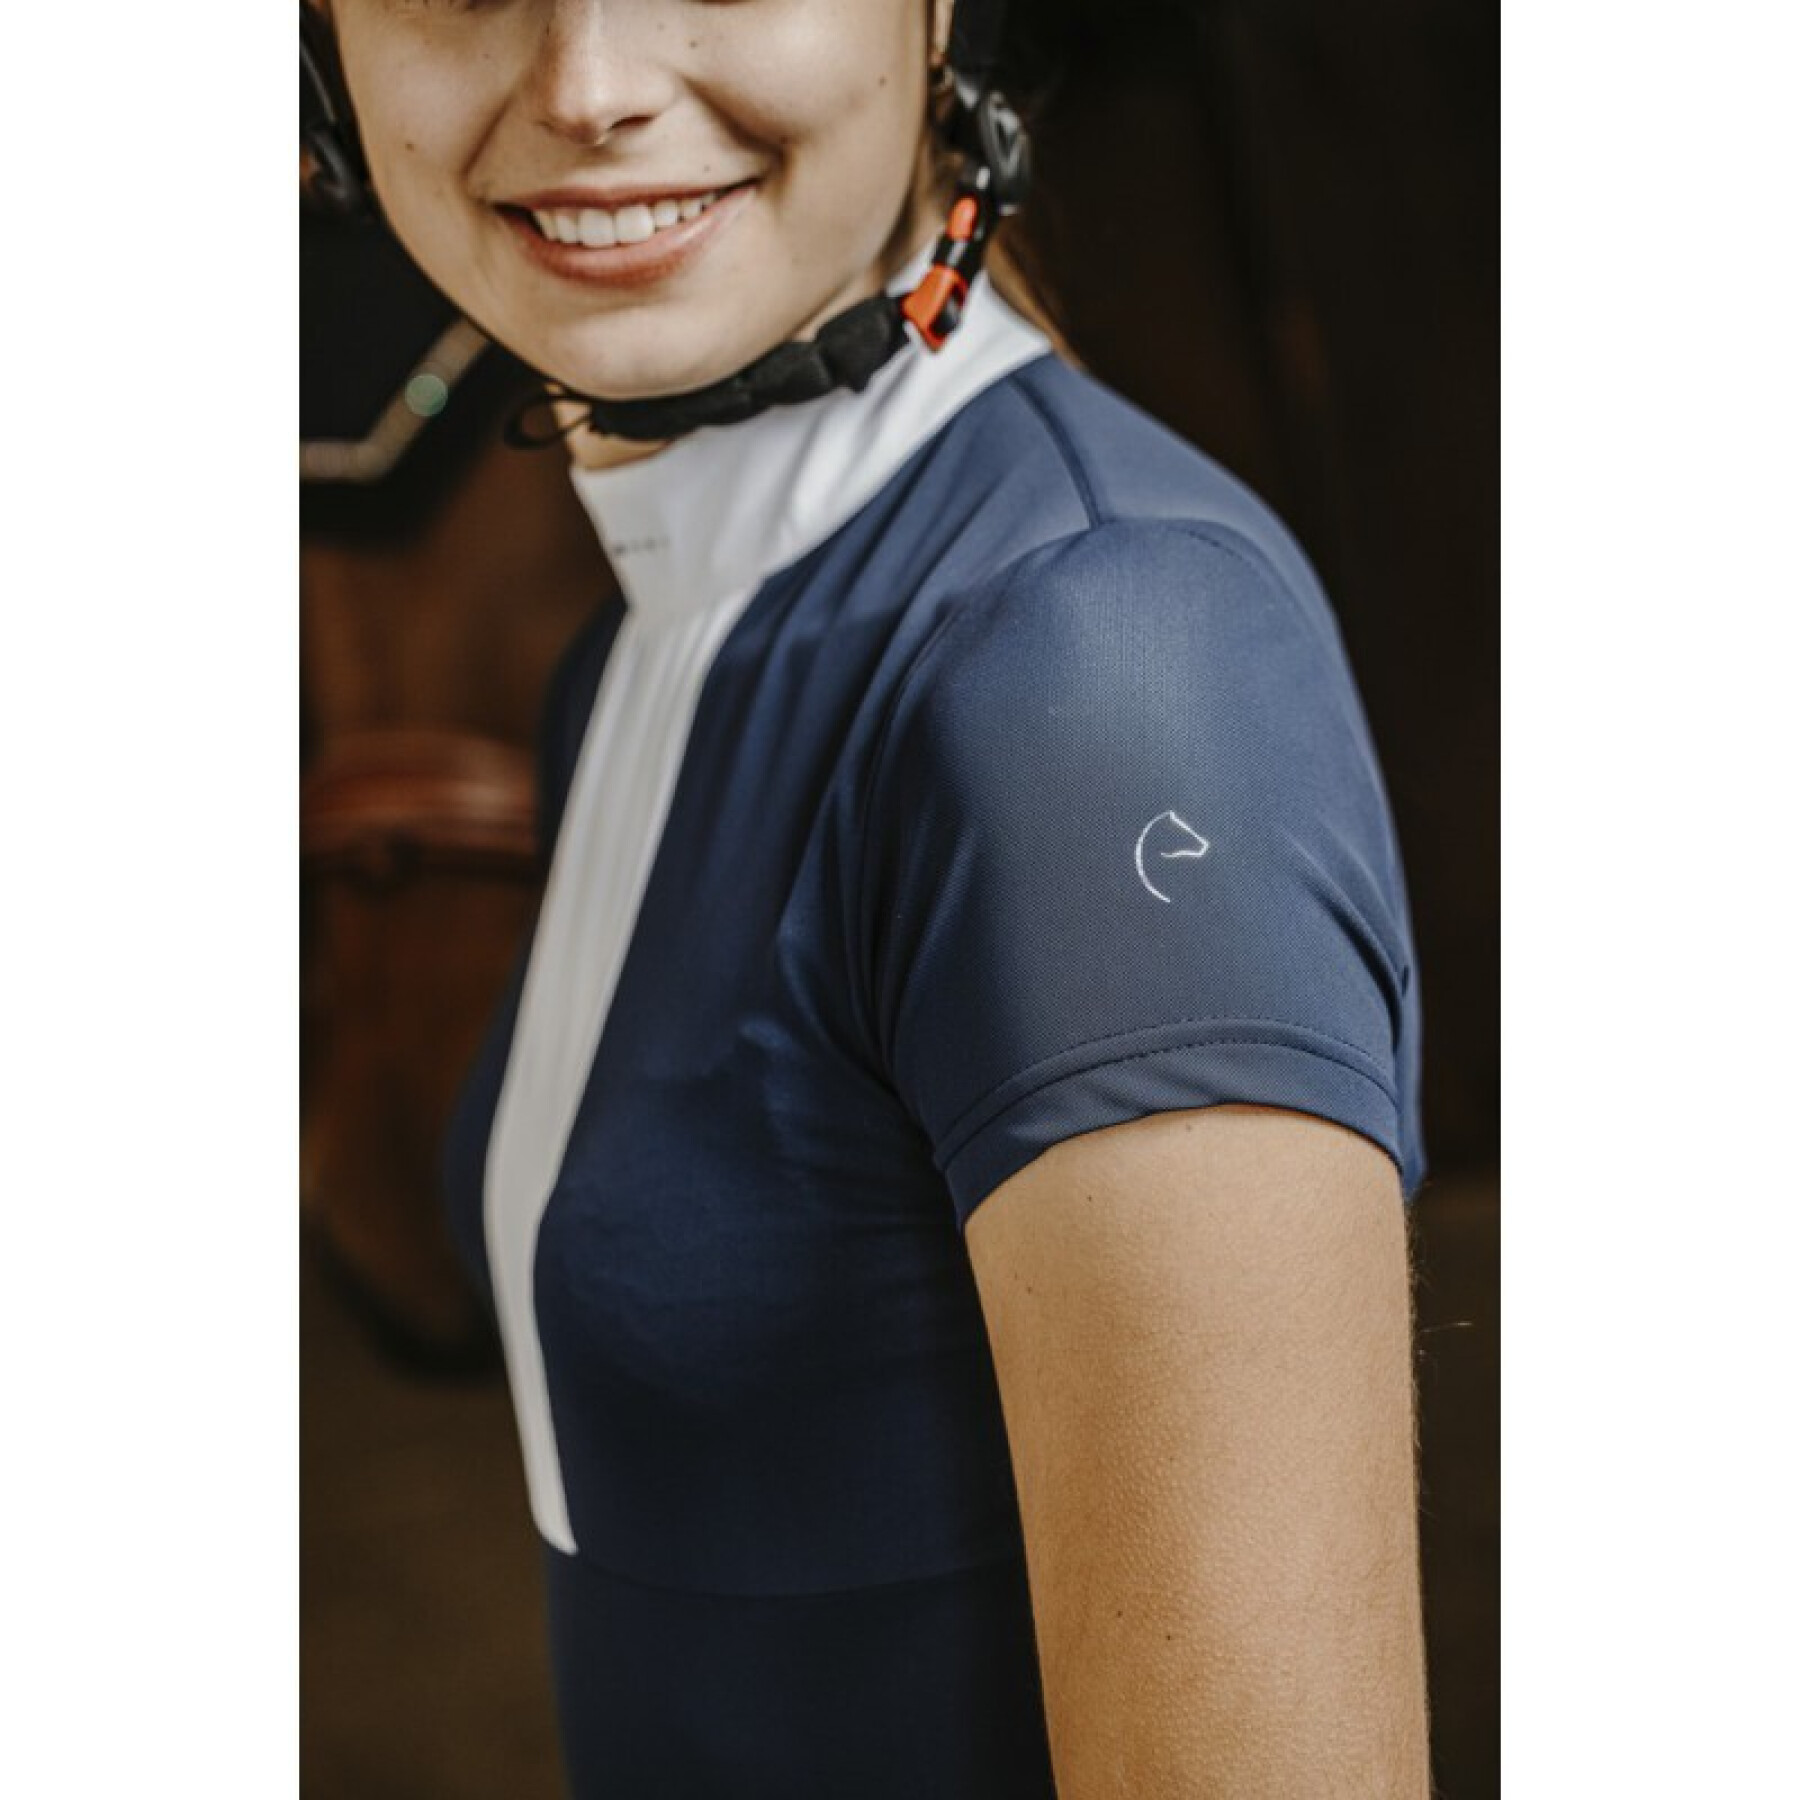 Polo d'équitation concours femme Equithème Doha